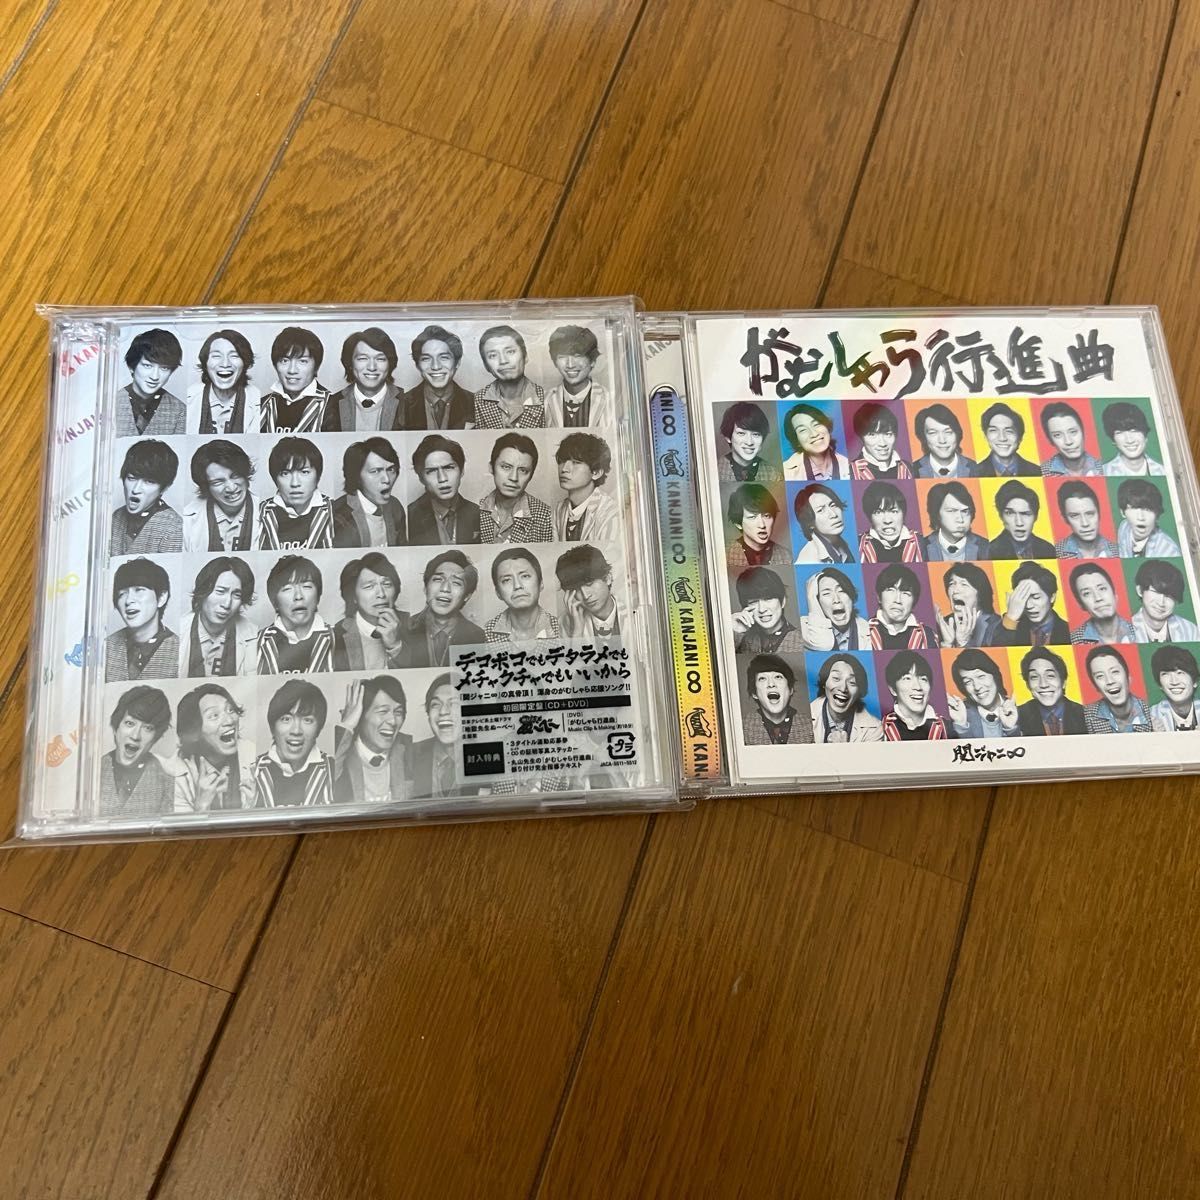 関ジャニ∞『がむしゃら行進曲』CD初回限定盤、通常盤